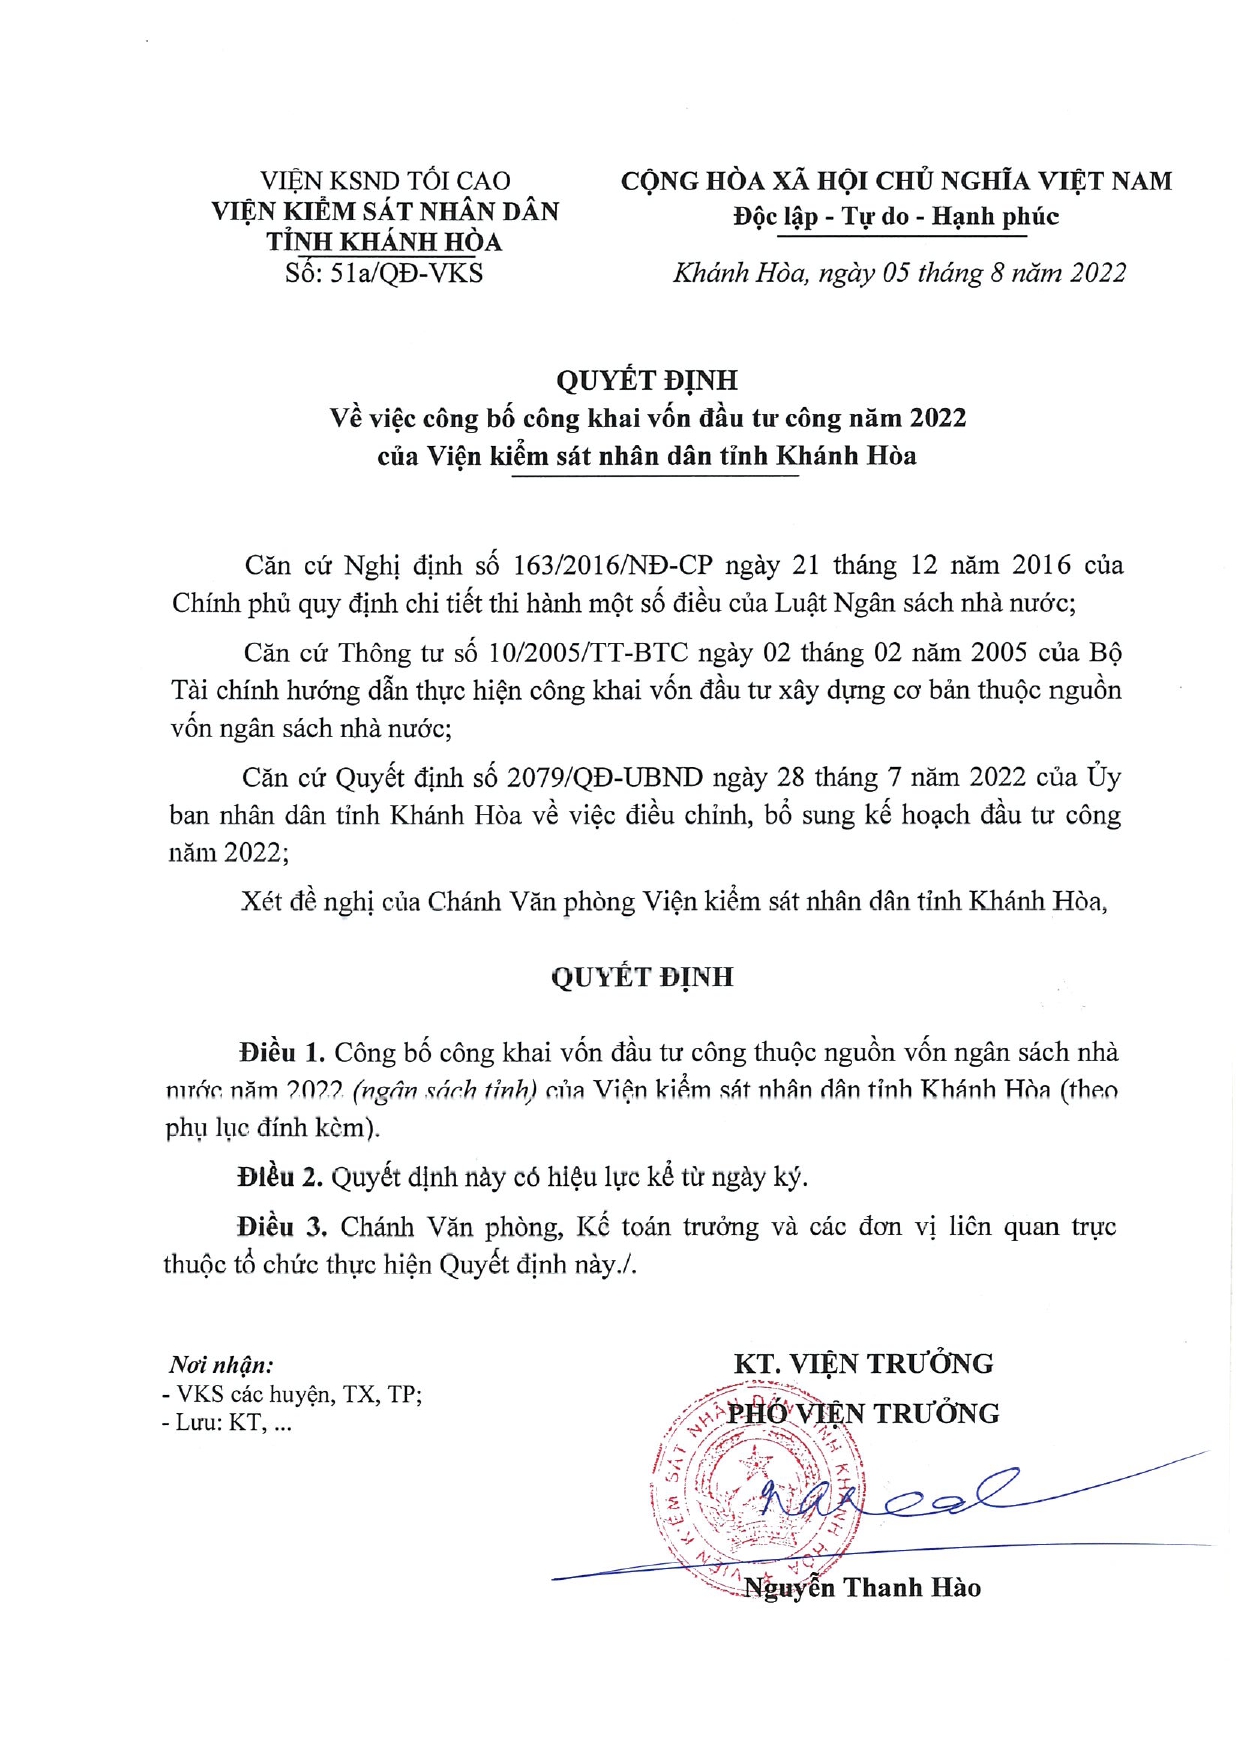 Công bố công khai vốn đầu tư công năm 2022 của Viện kiểm sát nhân dân tỉnh Khánh Hòa